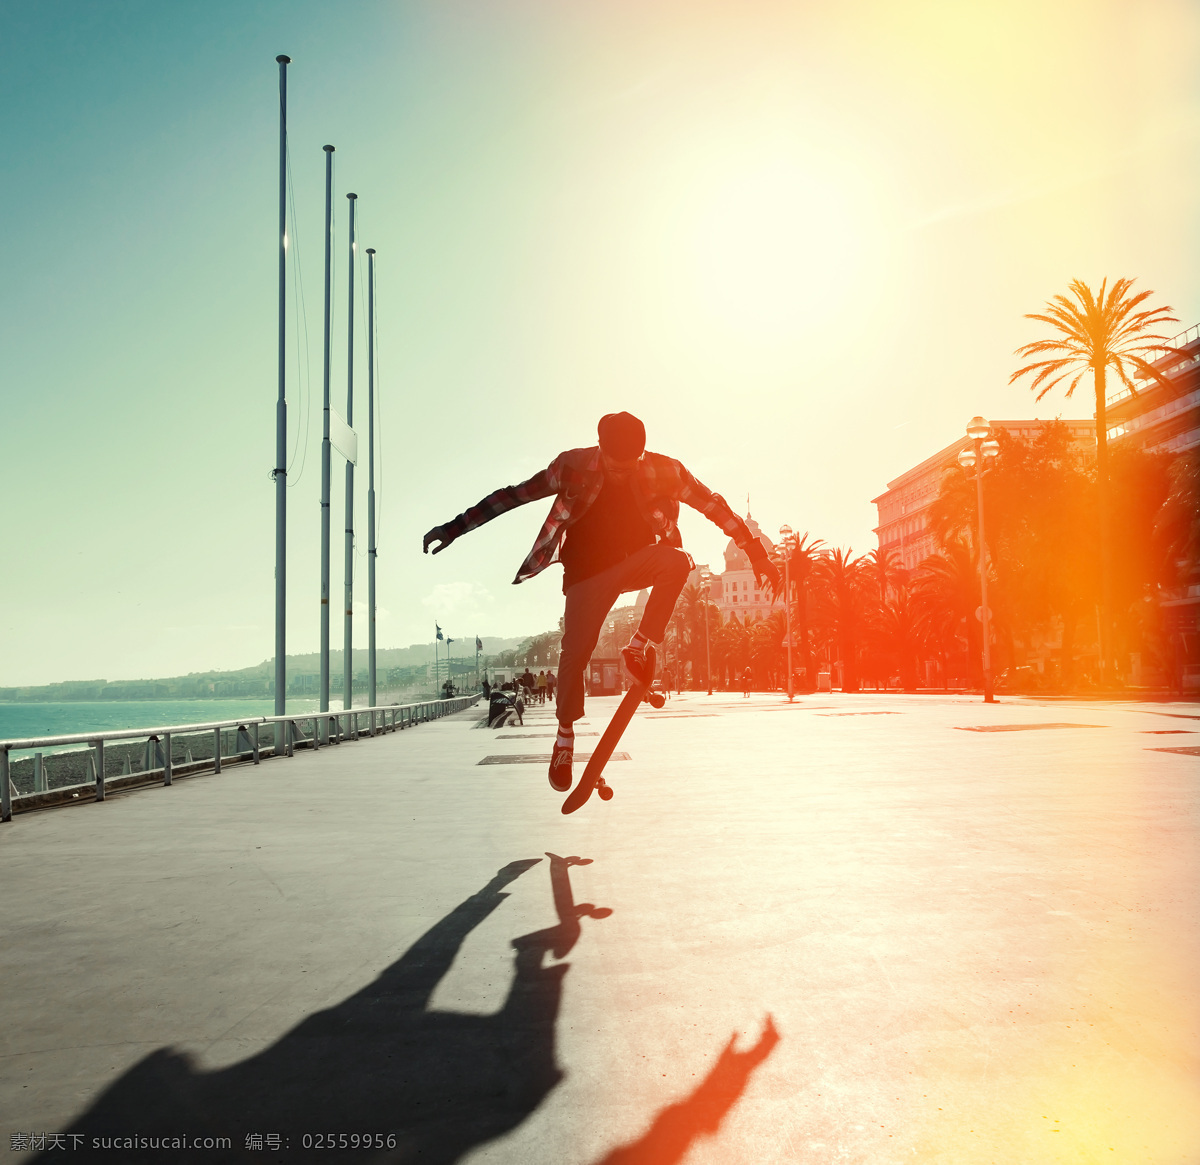 阳光 下 玩 滑板车 帅哥 男性 动 动感人物 滑板 滑板运动 体育运动 生活百科